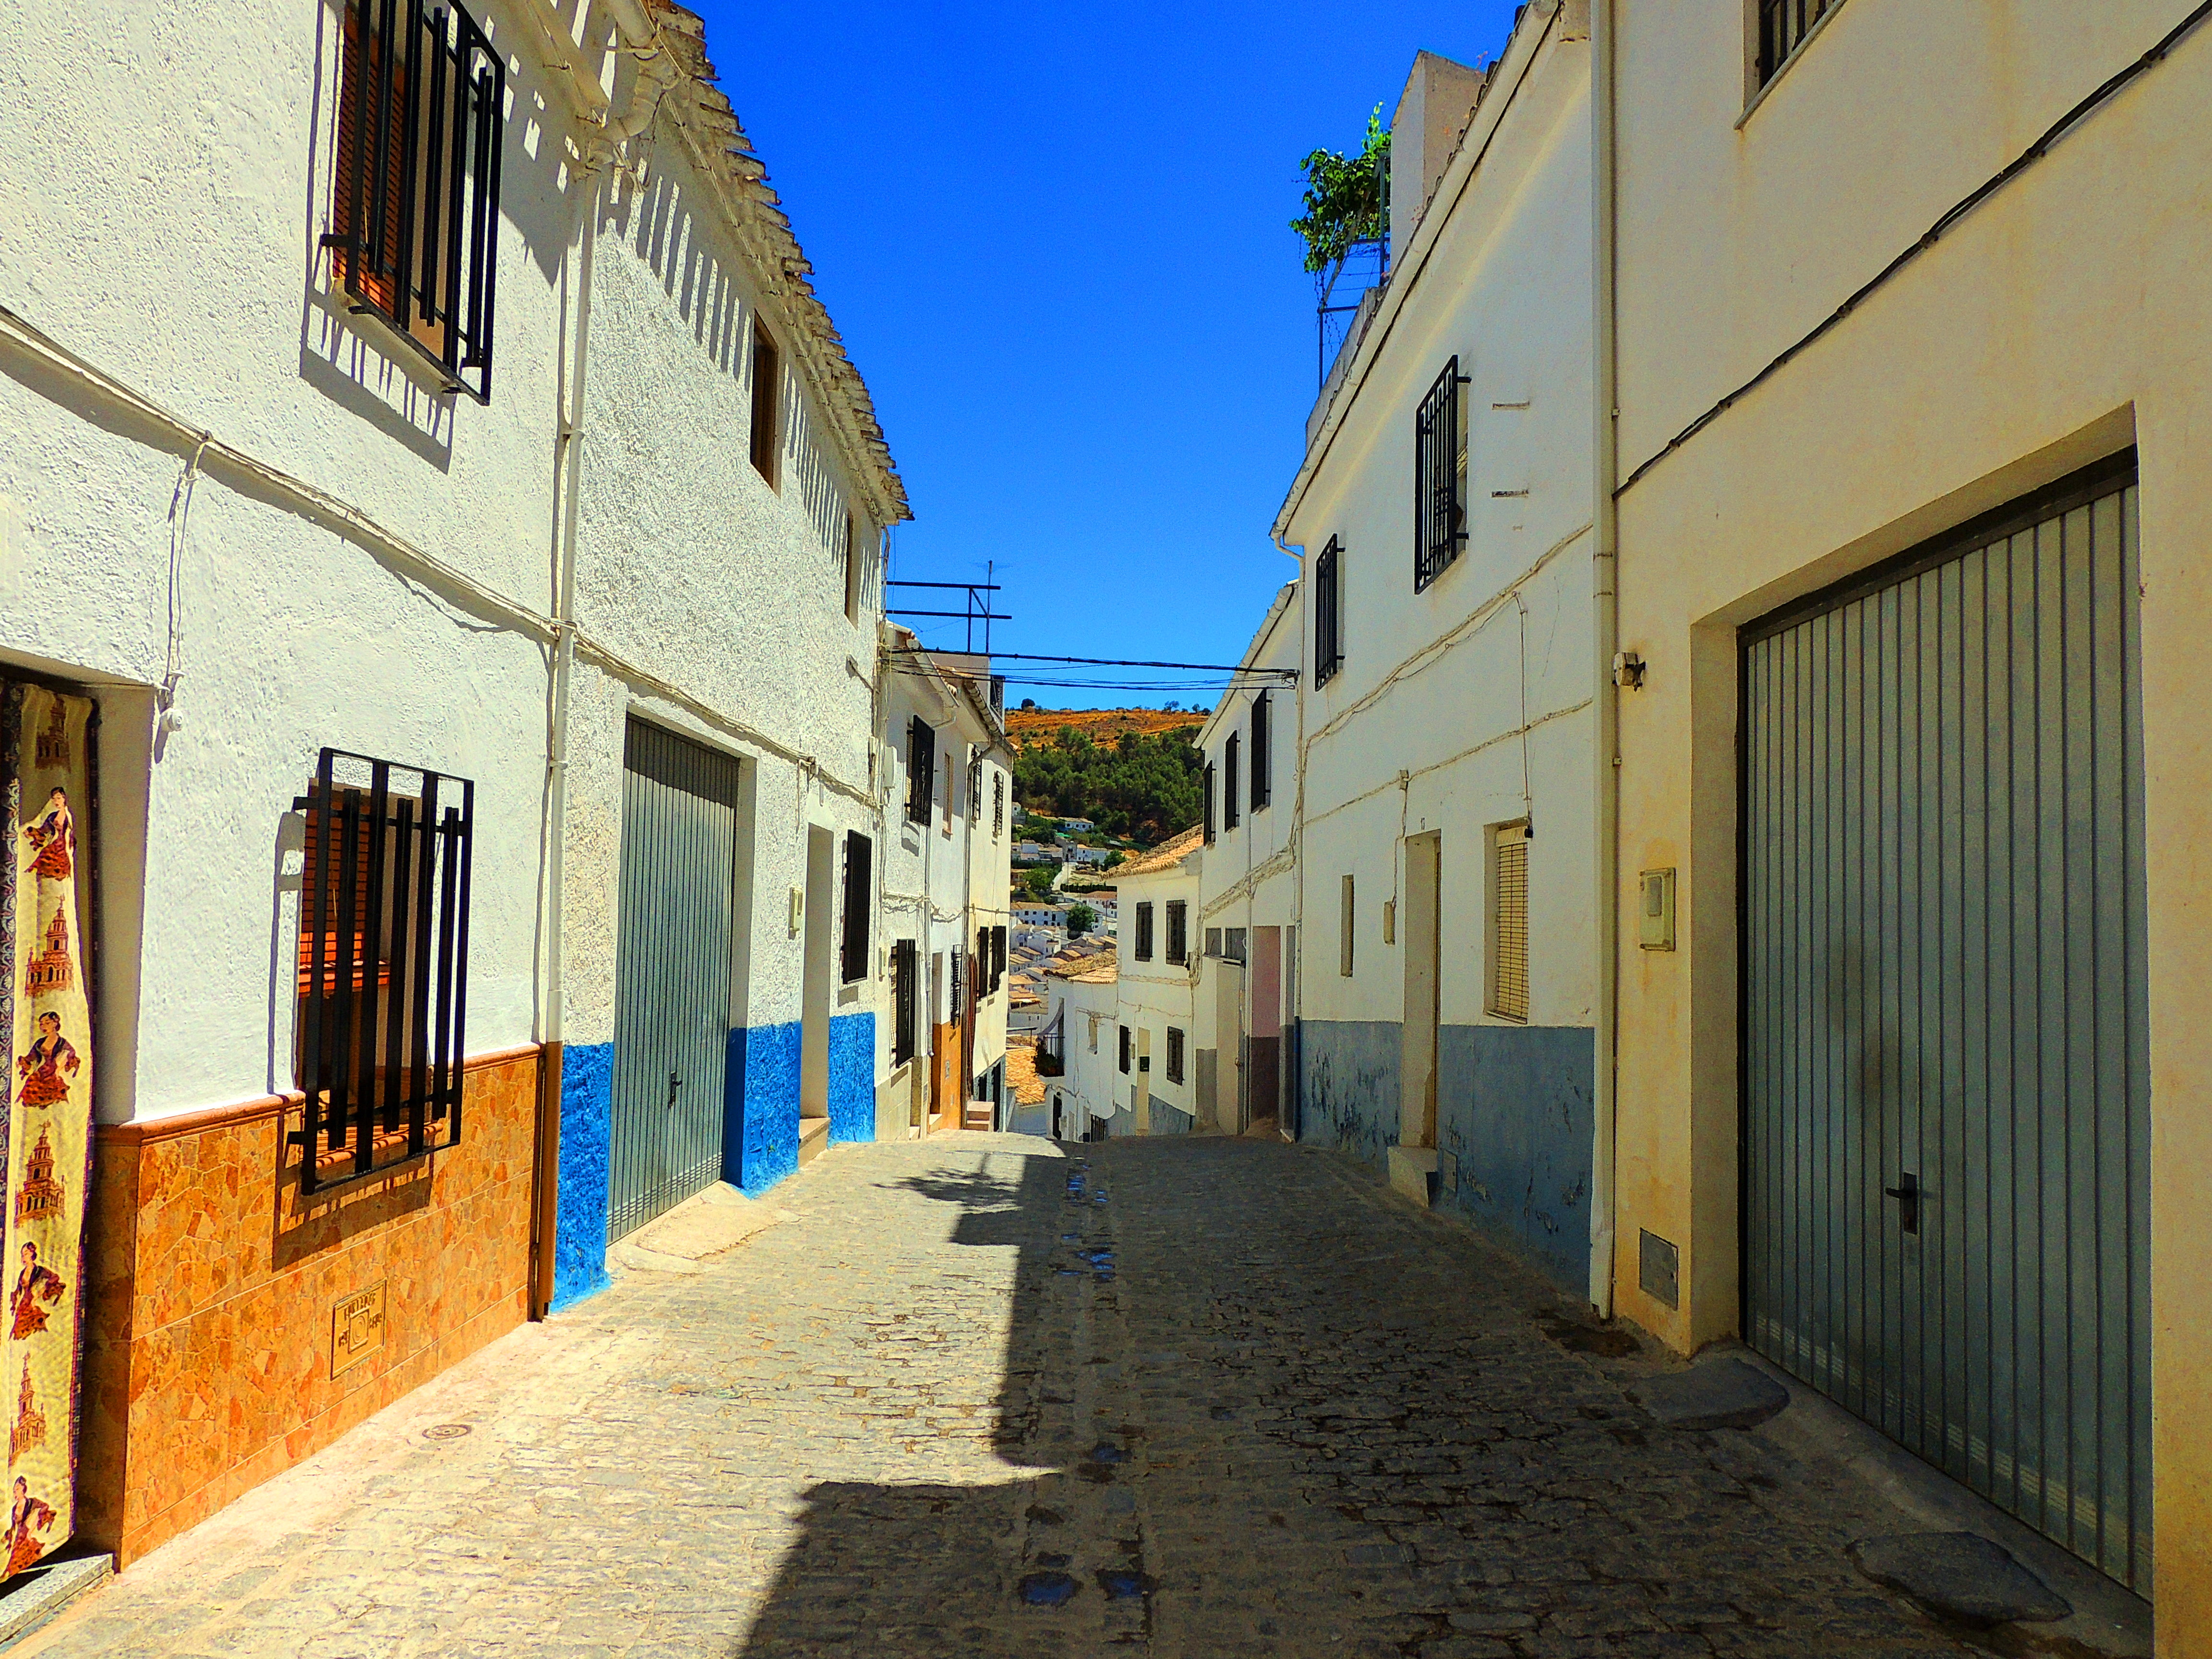 Foto: Calle Arco - Montefrío (Granada), España